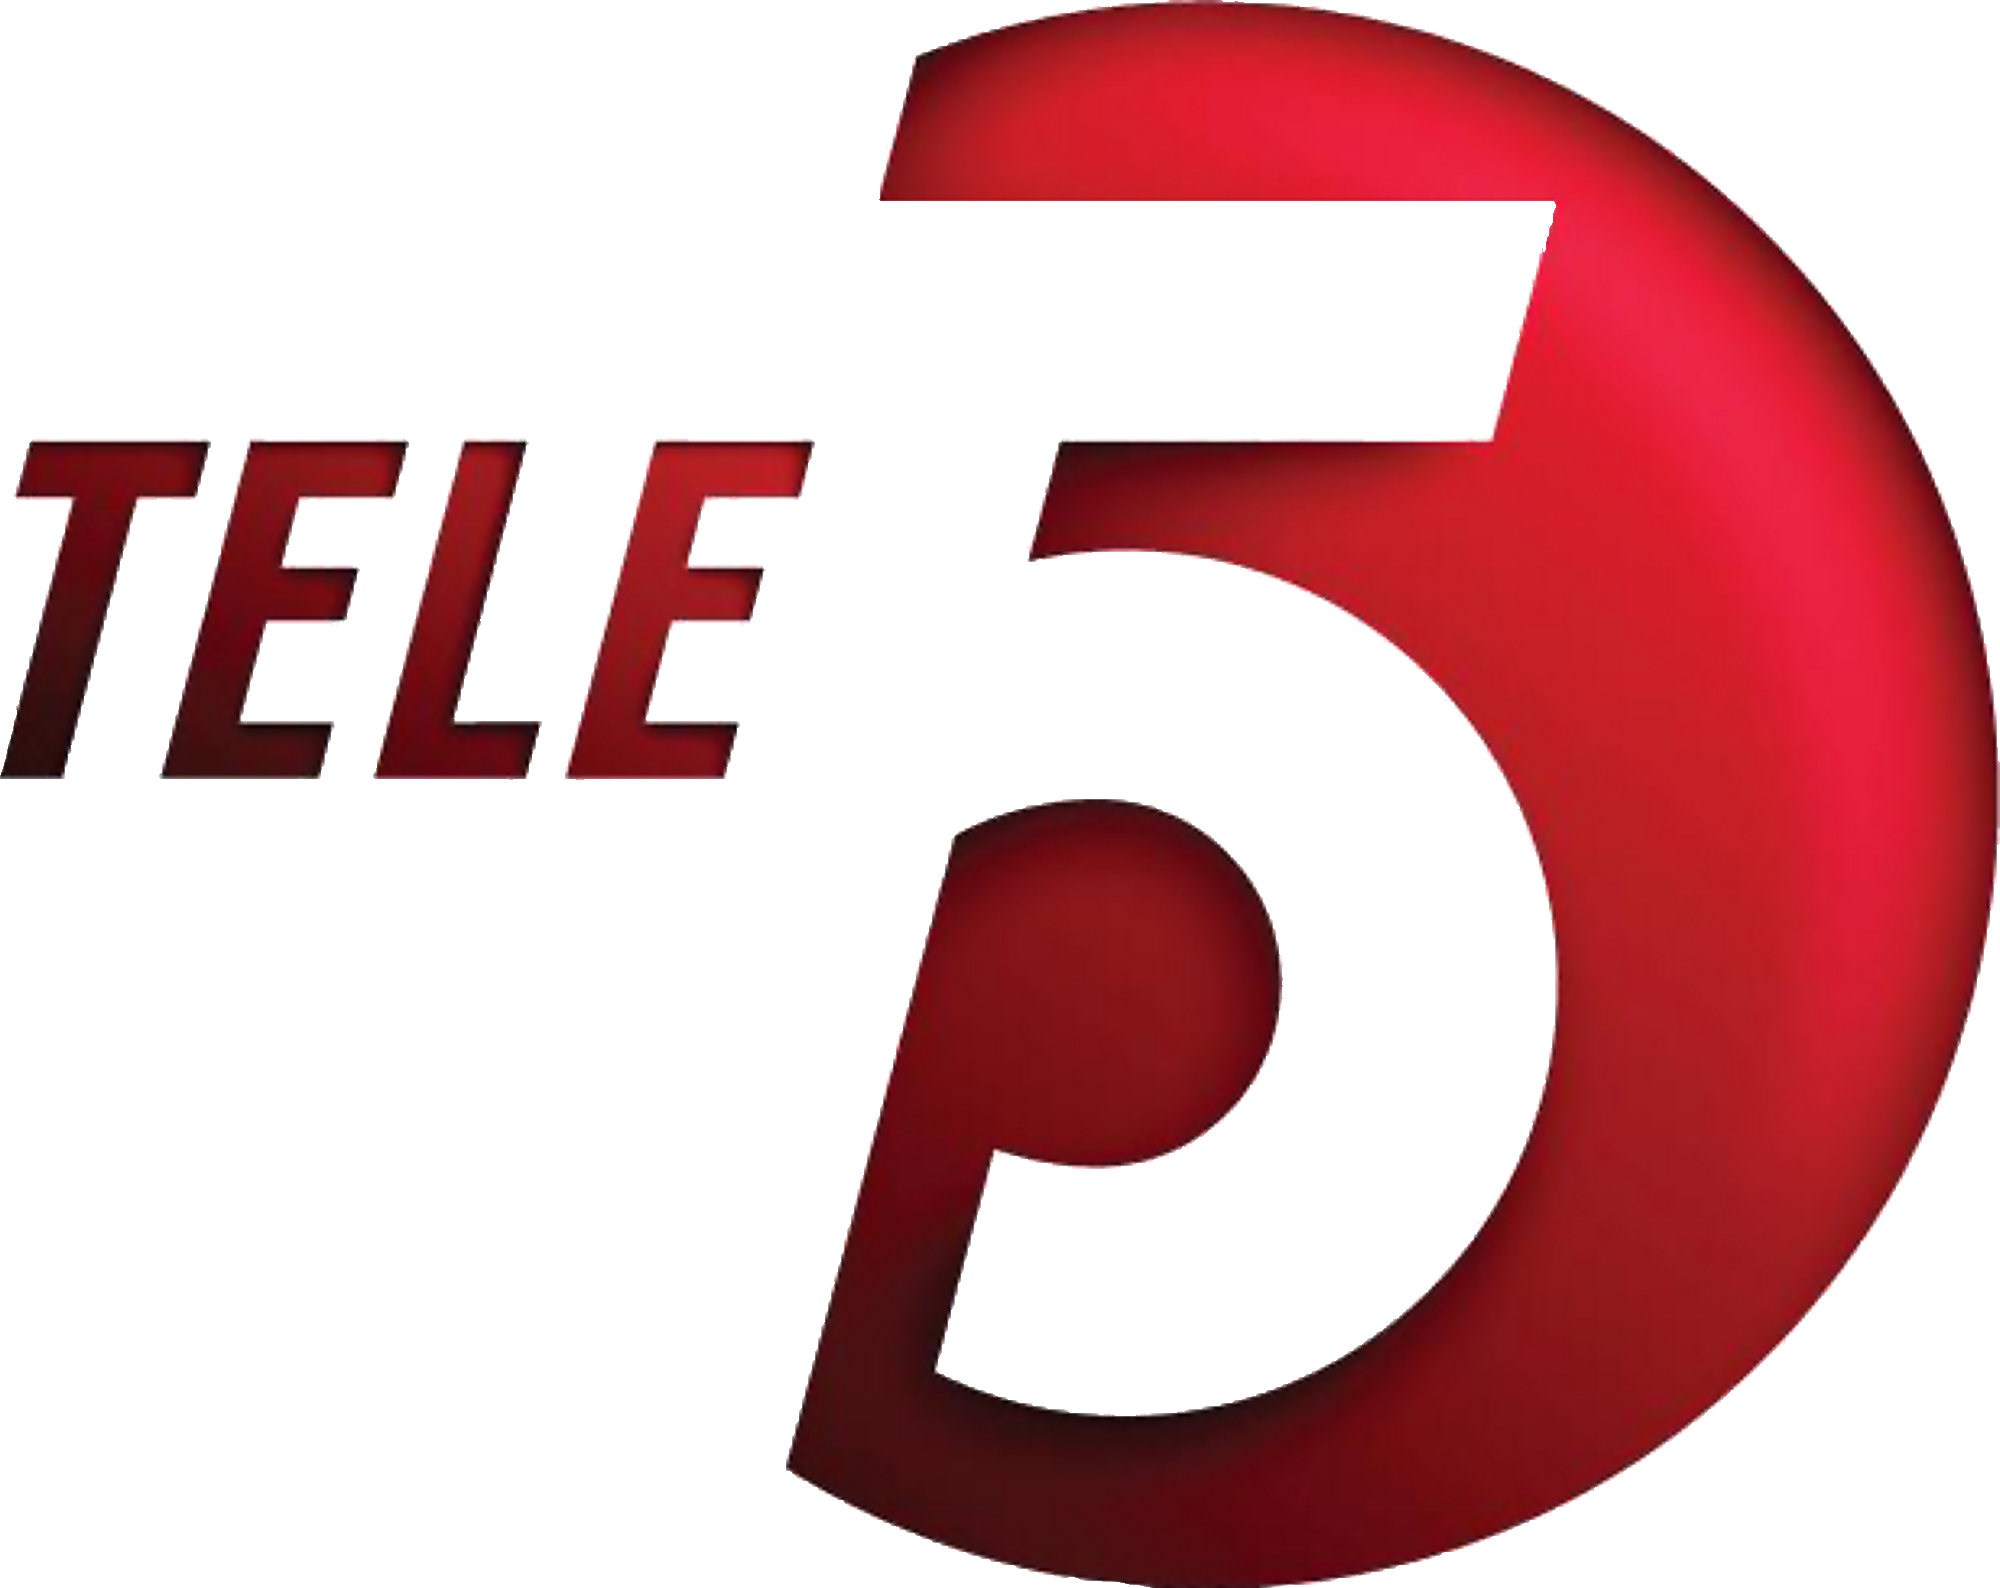 Tele 5 (2012 .n.v.)